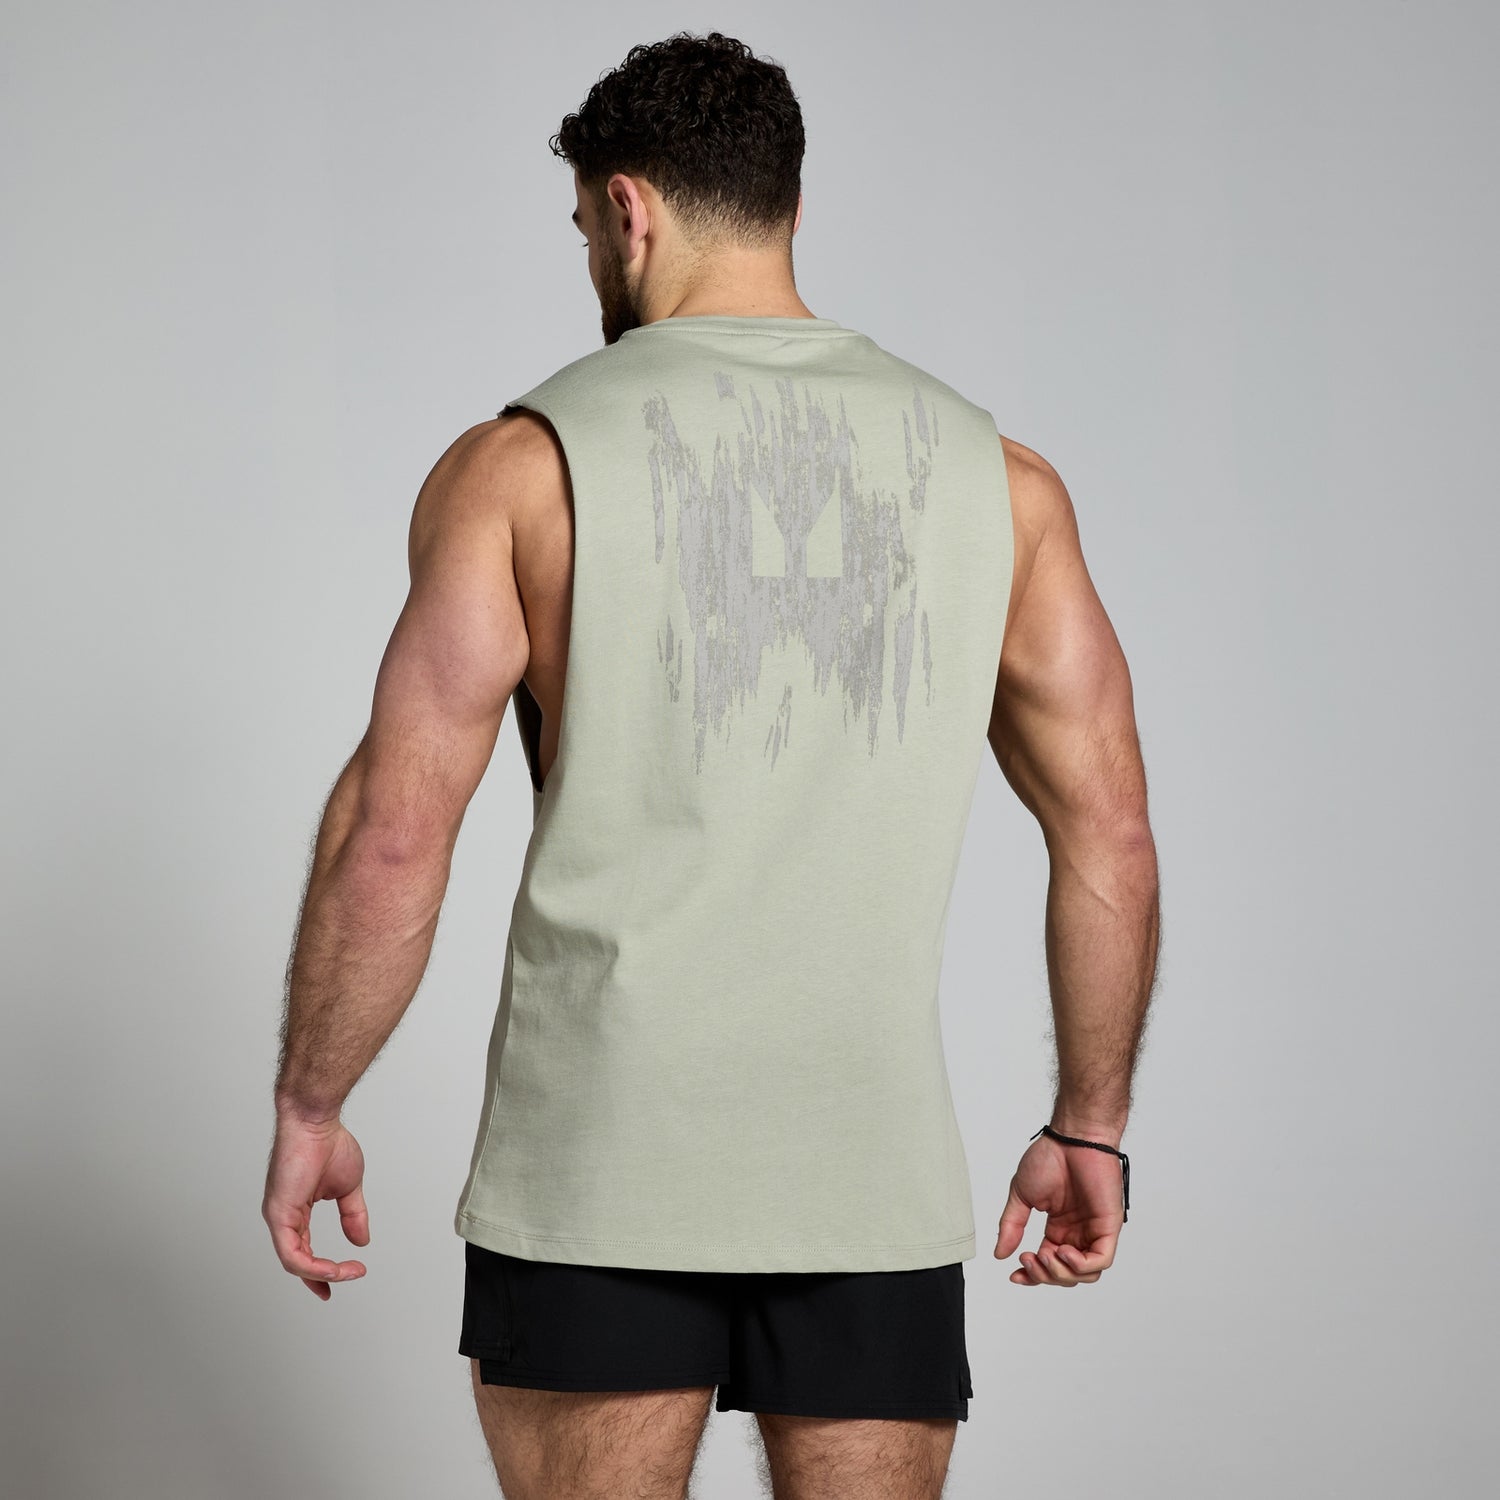 Camiseta sin mangas con estampado gráfico Clay para hombre de MP - Hierba marina - XS